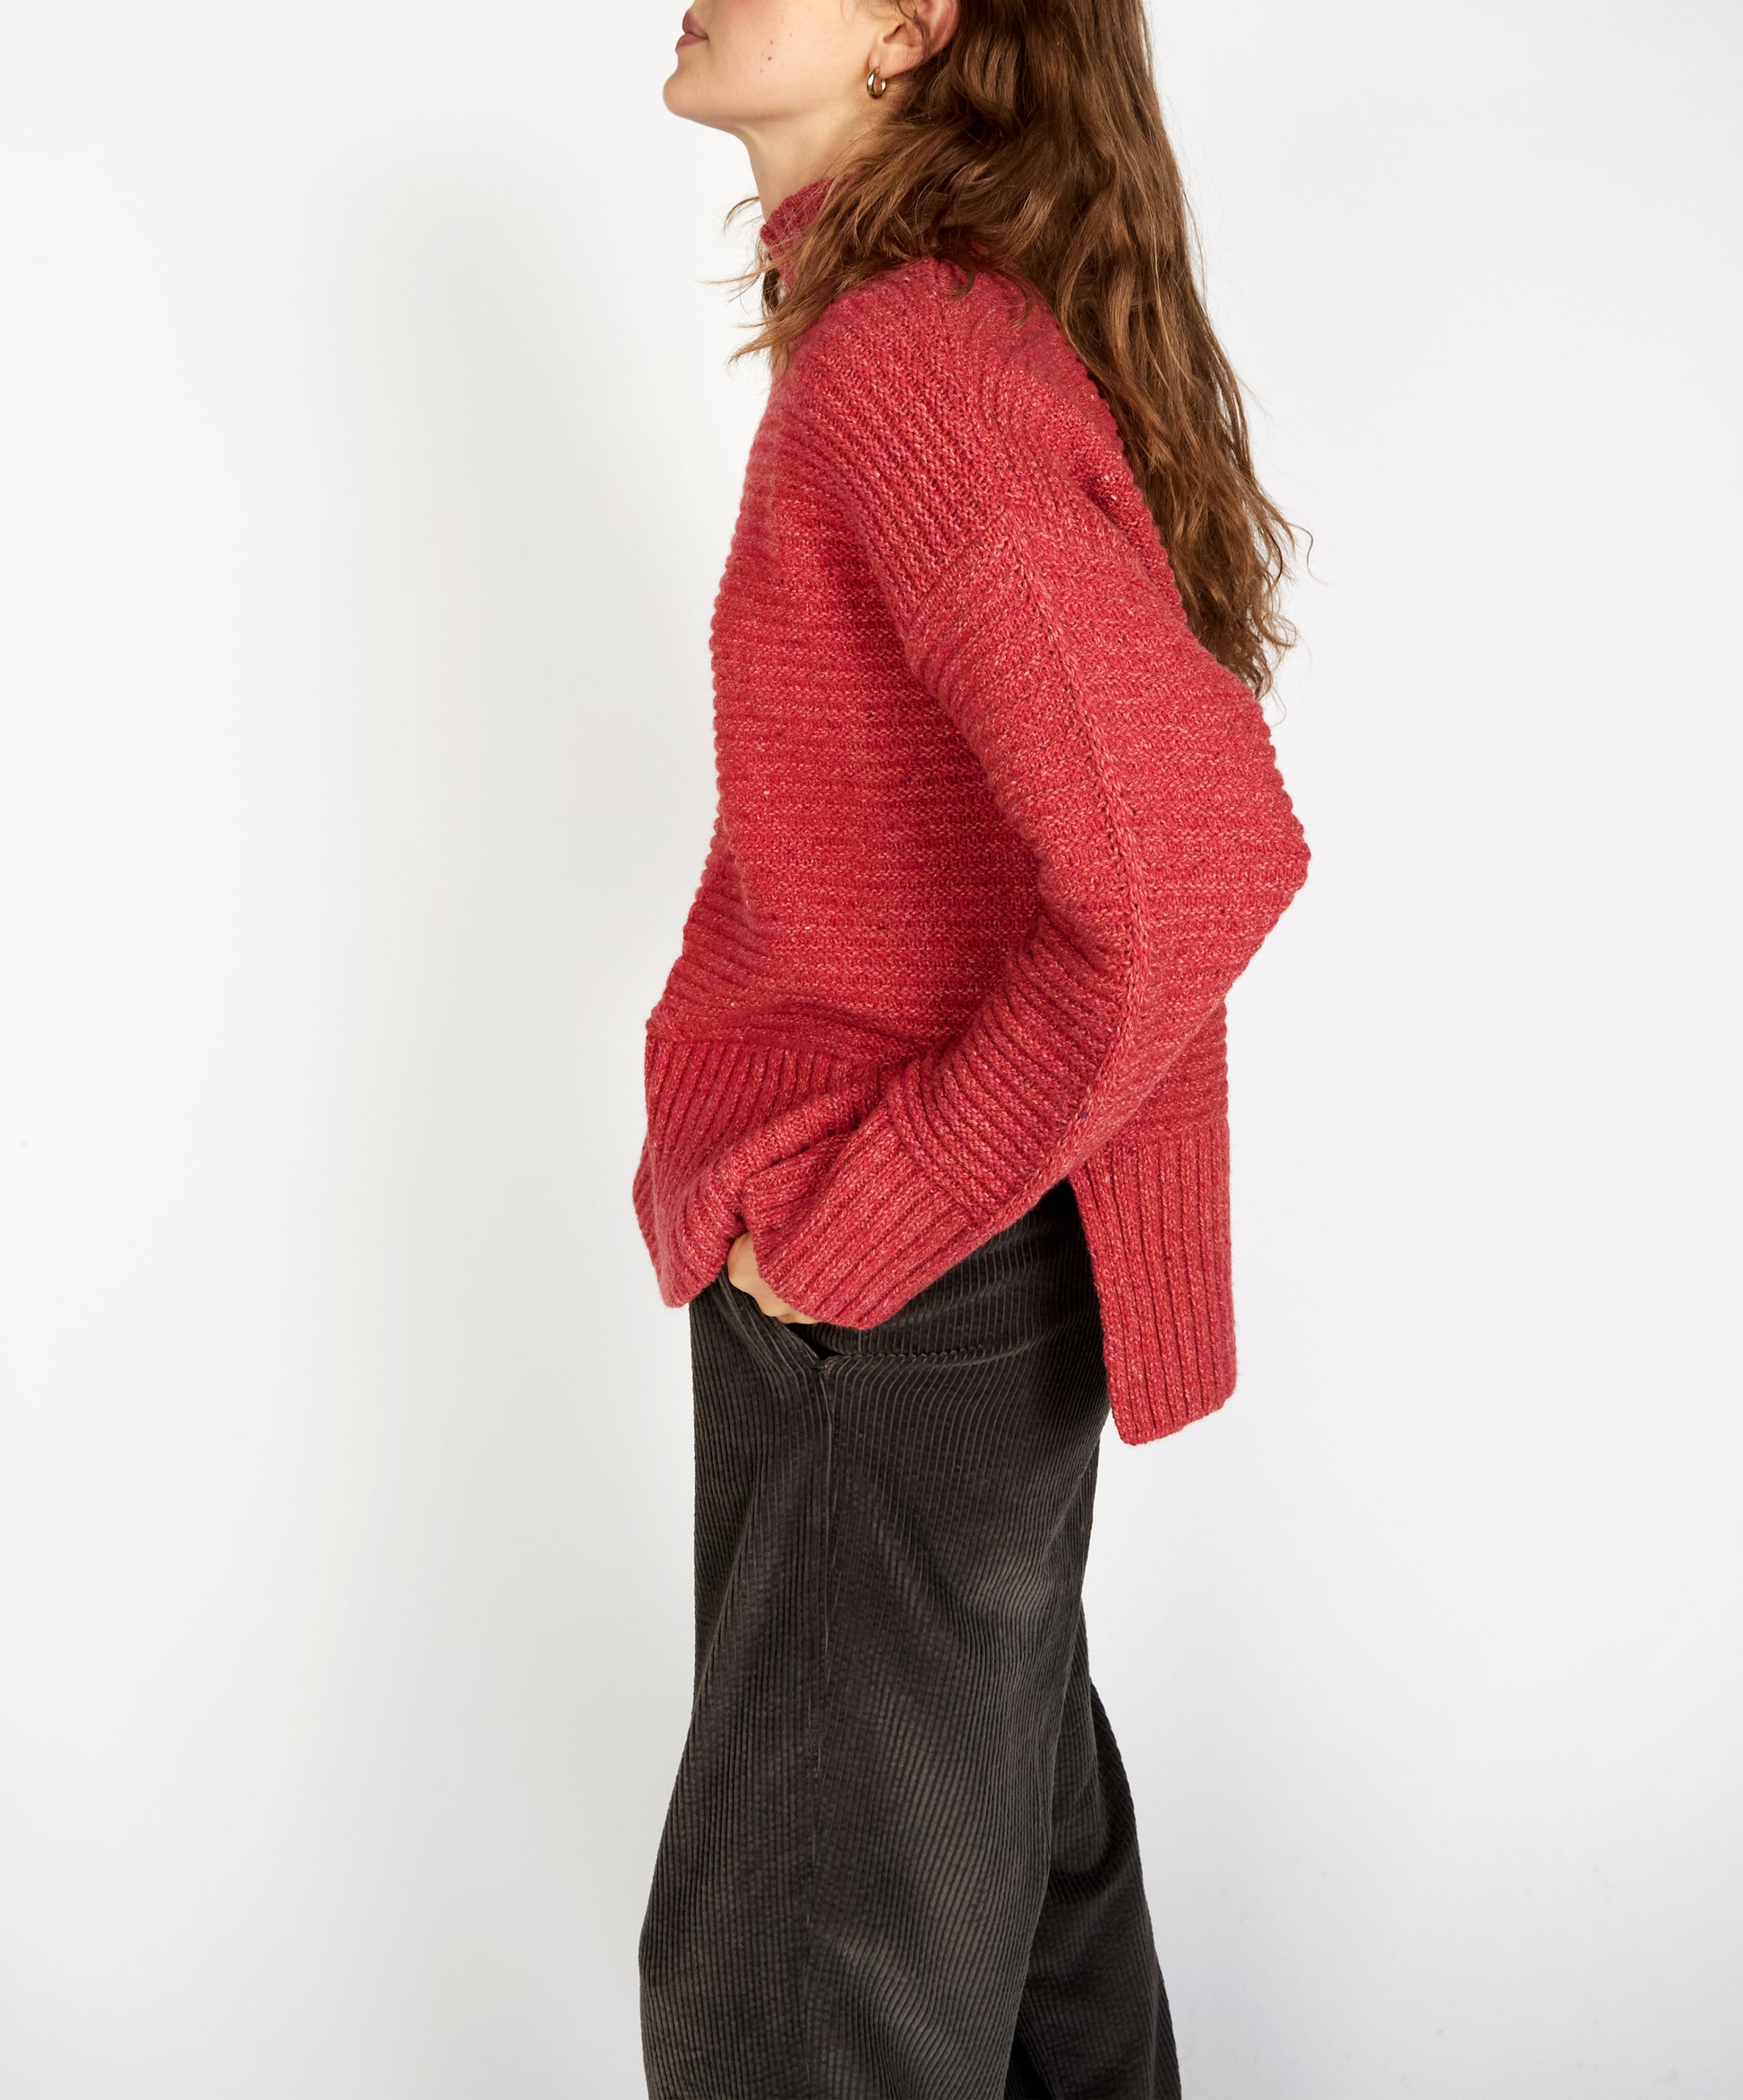 IrelandsEye Knitwear ‘Iris’ Funnel Neck Sweater Coral